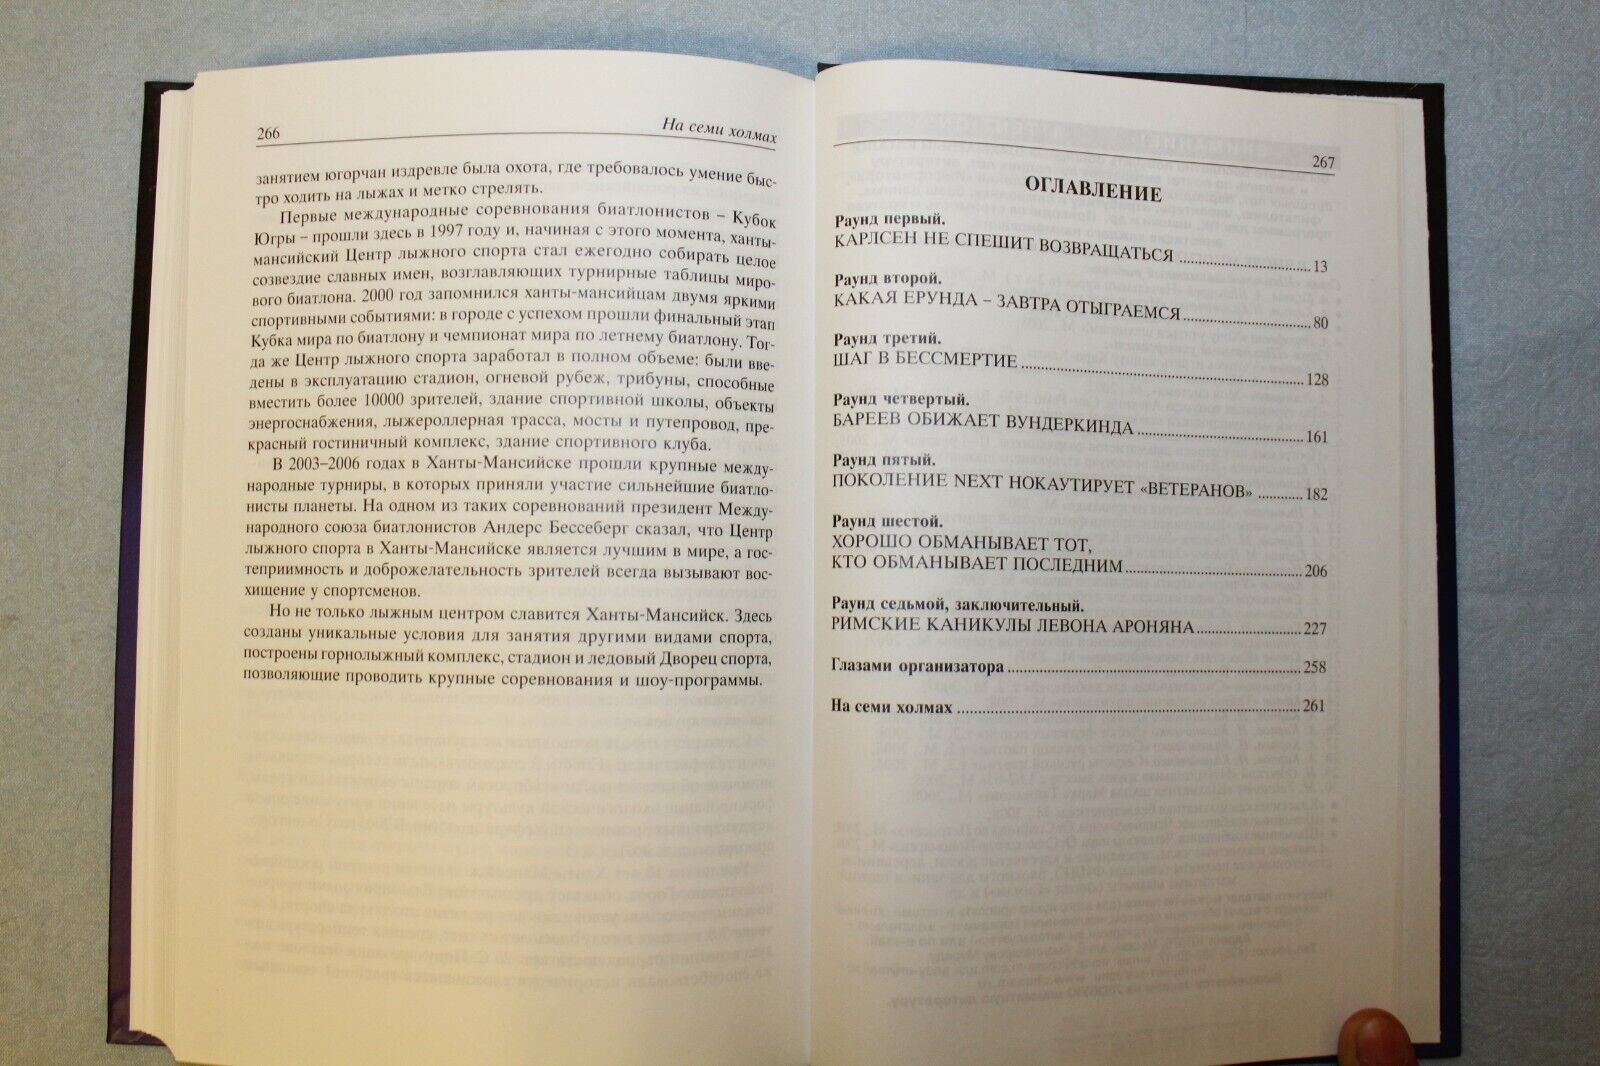 10674.2 Chess Books: World Cup Khanty-Mansiysk & Kremlin Debut. Ilyumzhinov. 2002, 07